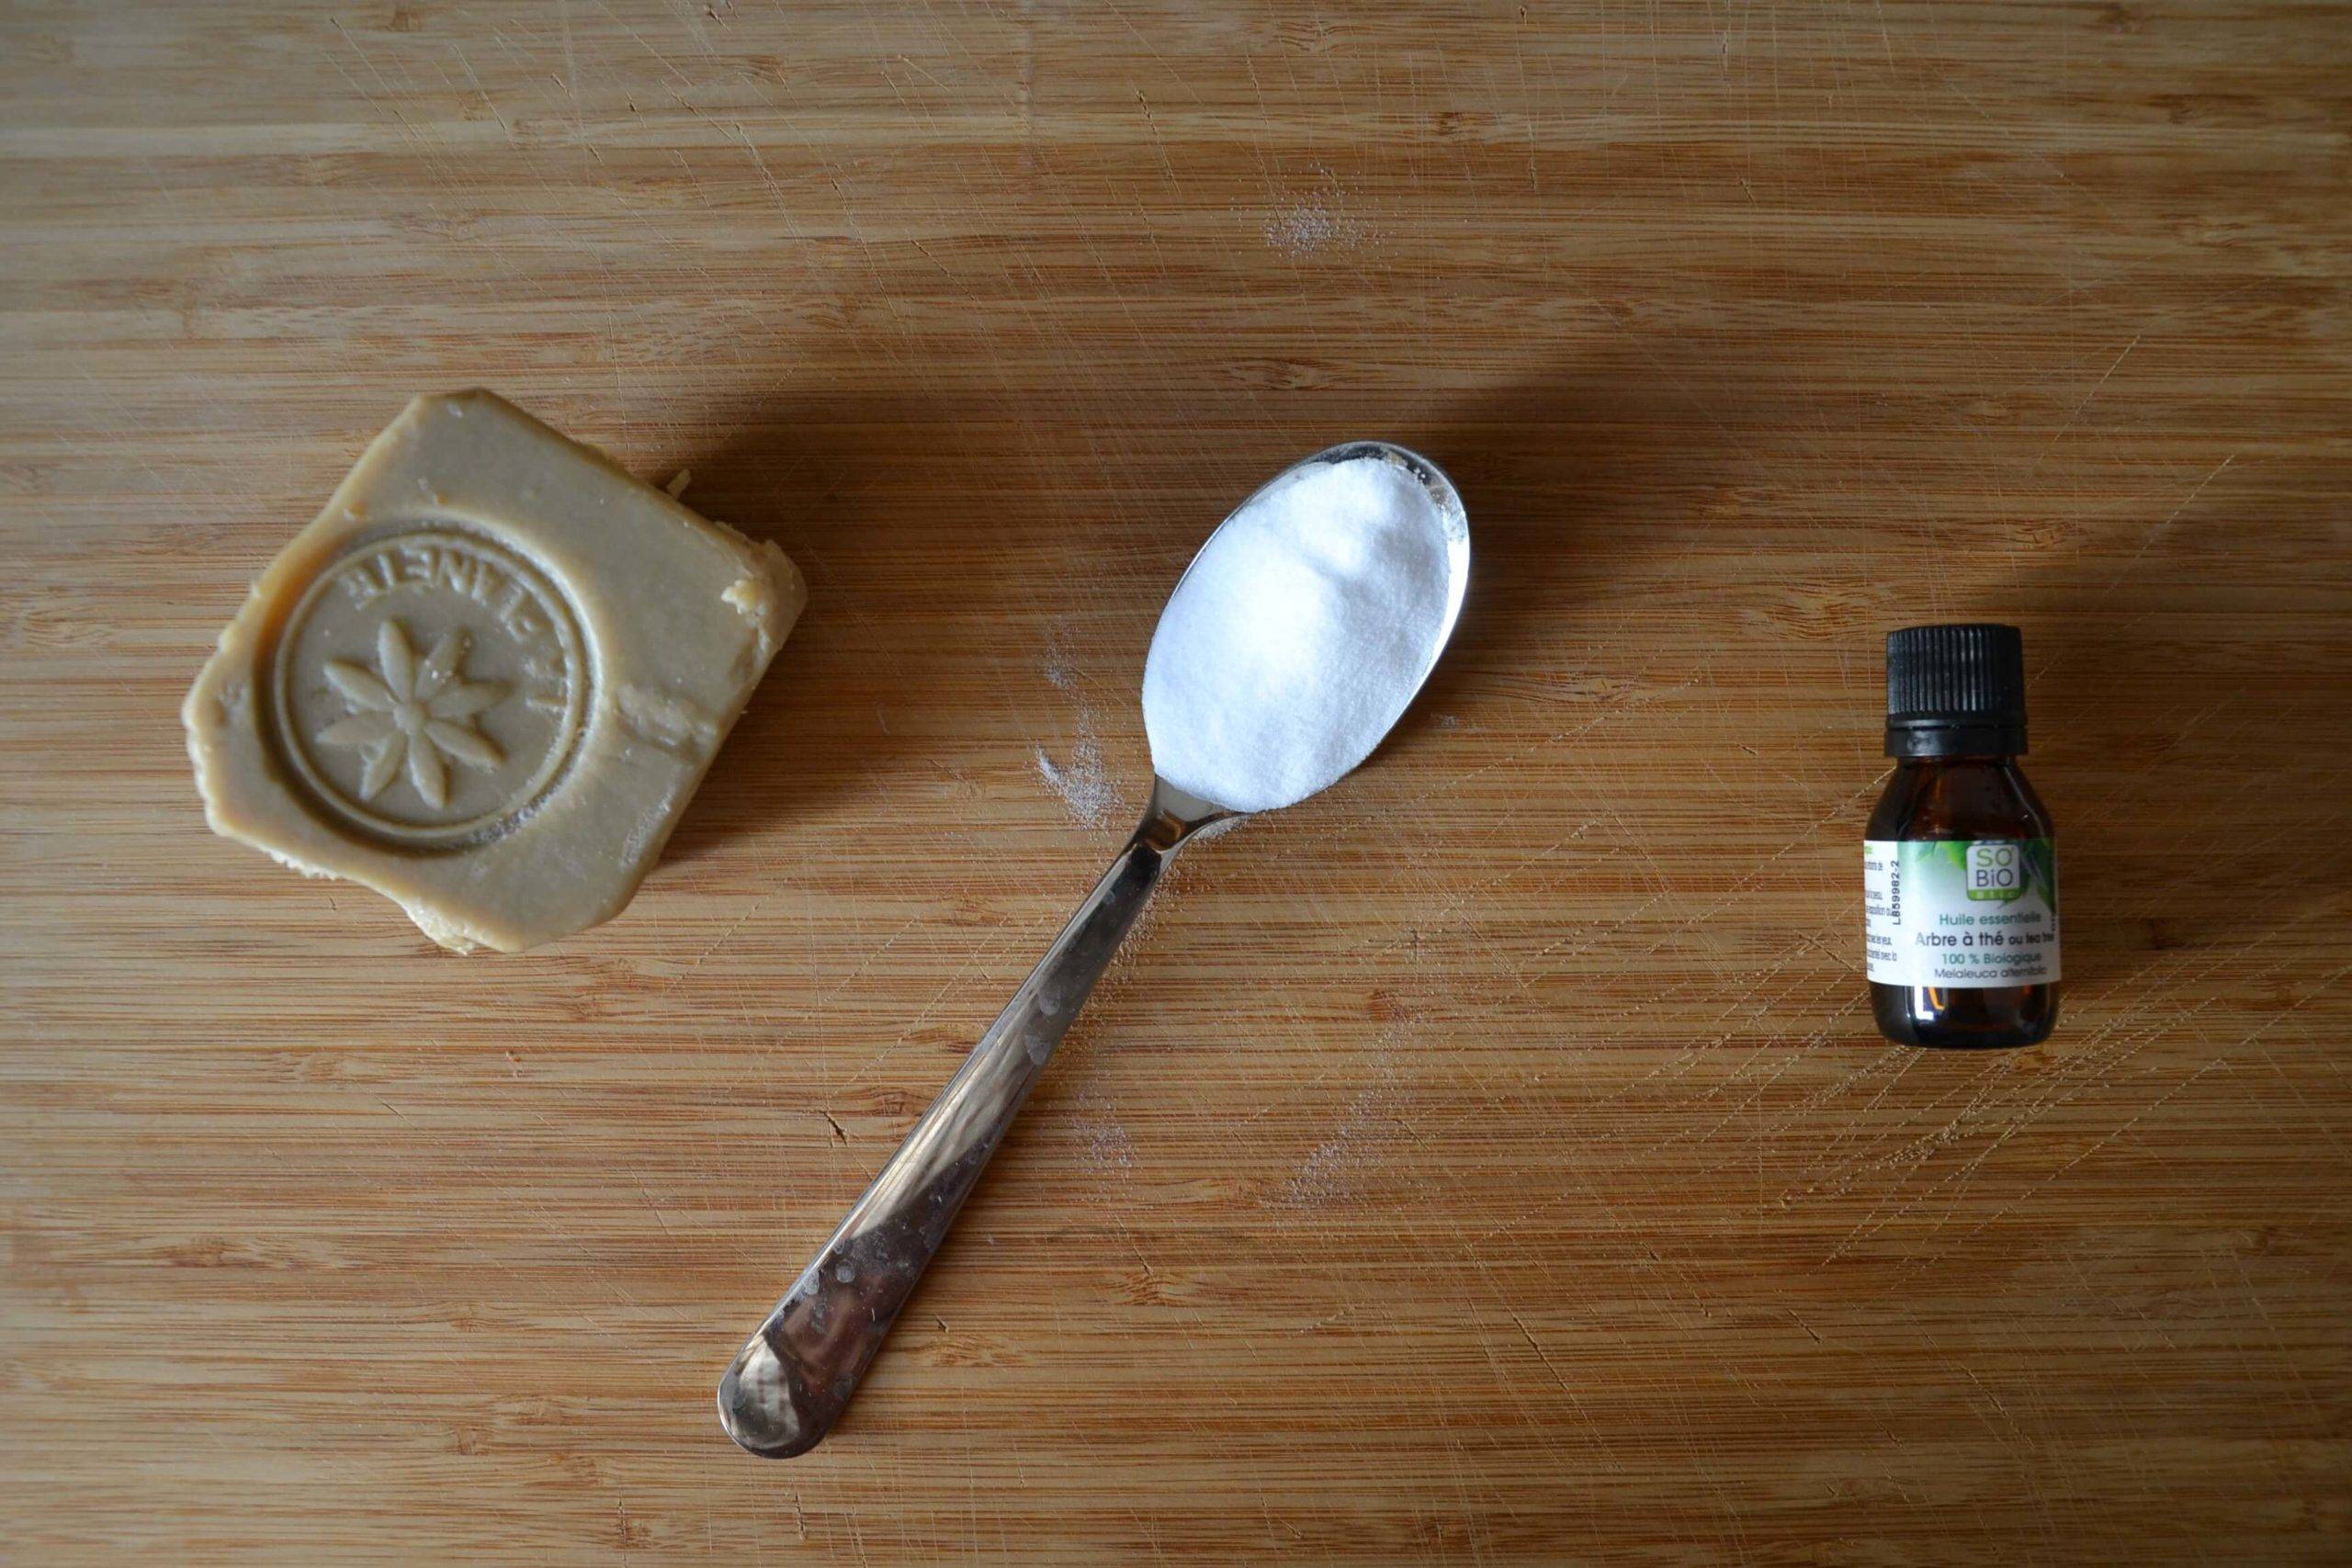 ingrédients lessive maison à base de savon de marseille, bicarbonate de soude et huiles essentielles